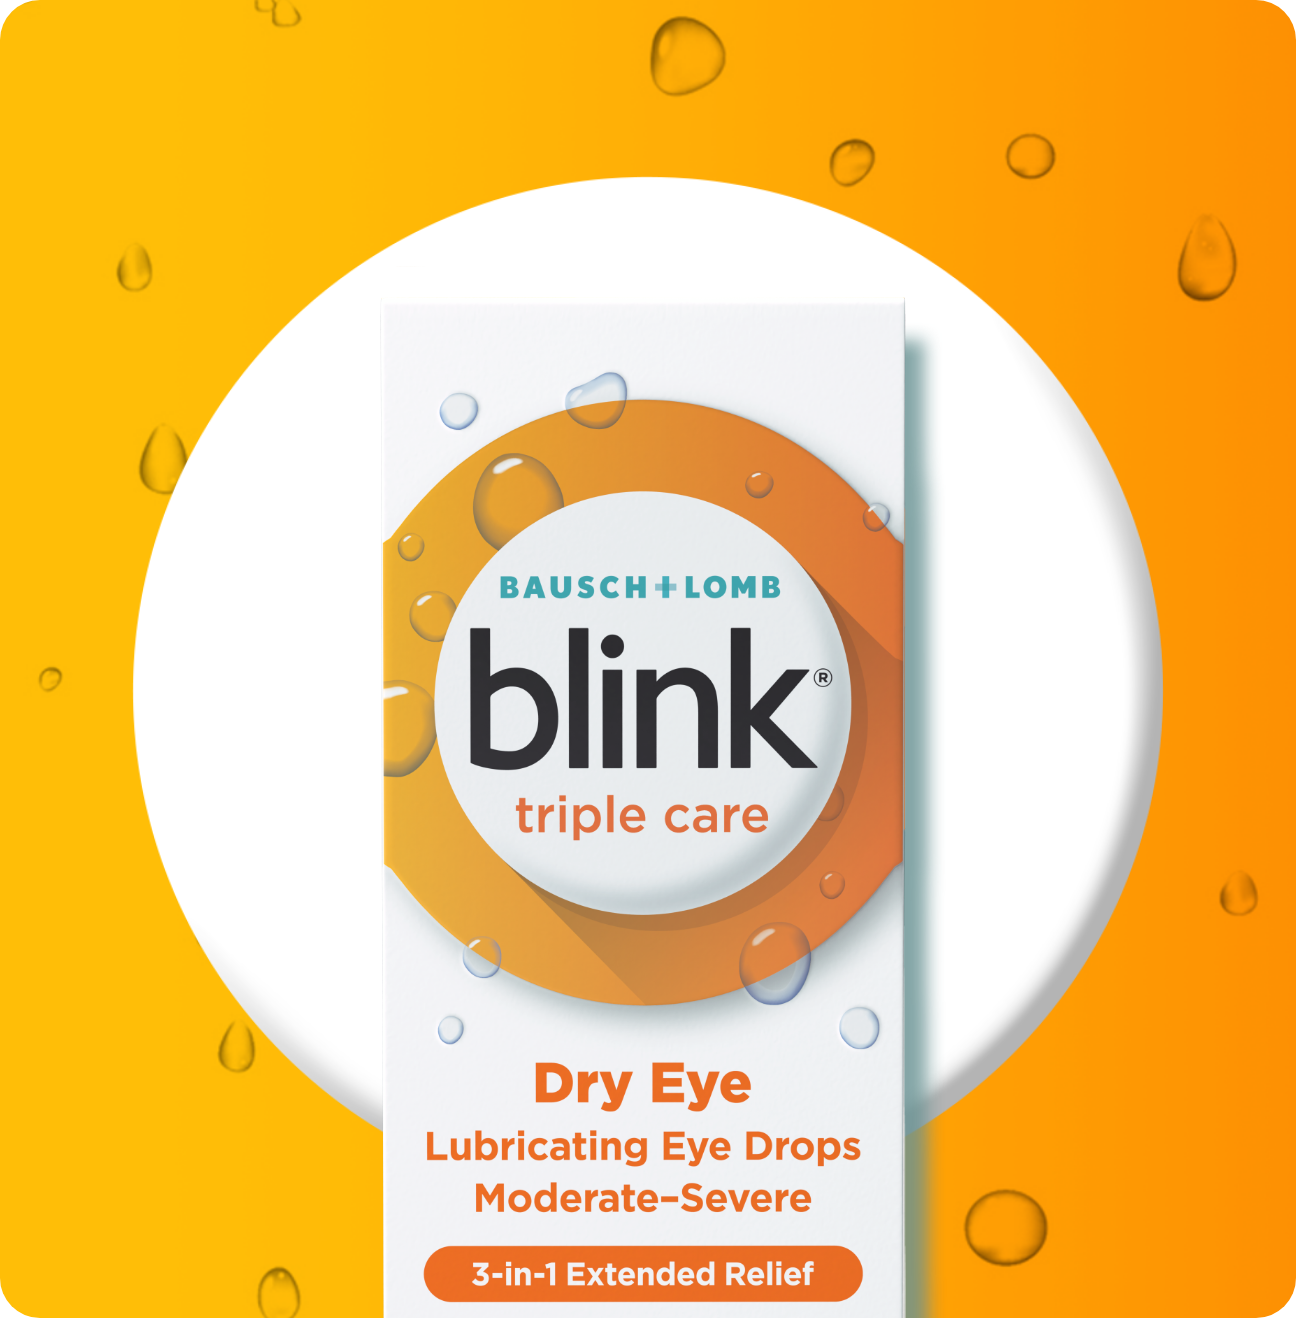 Blink Triple Care Lubricating Eye Drops package